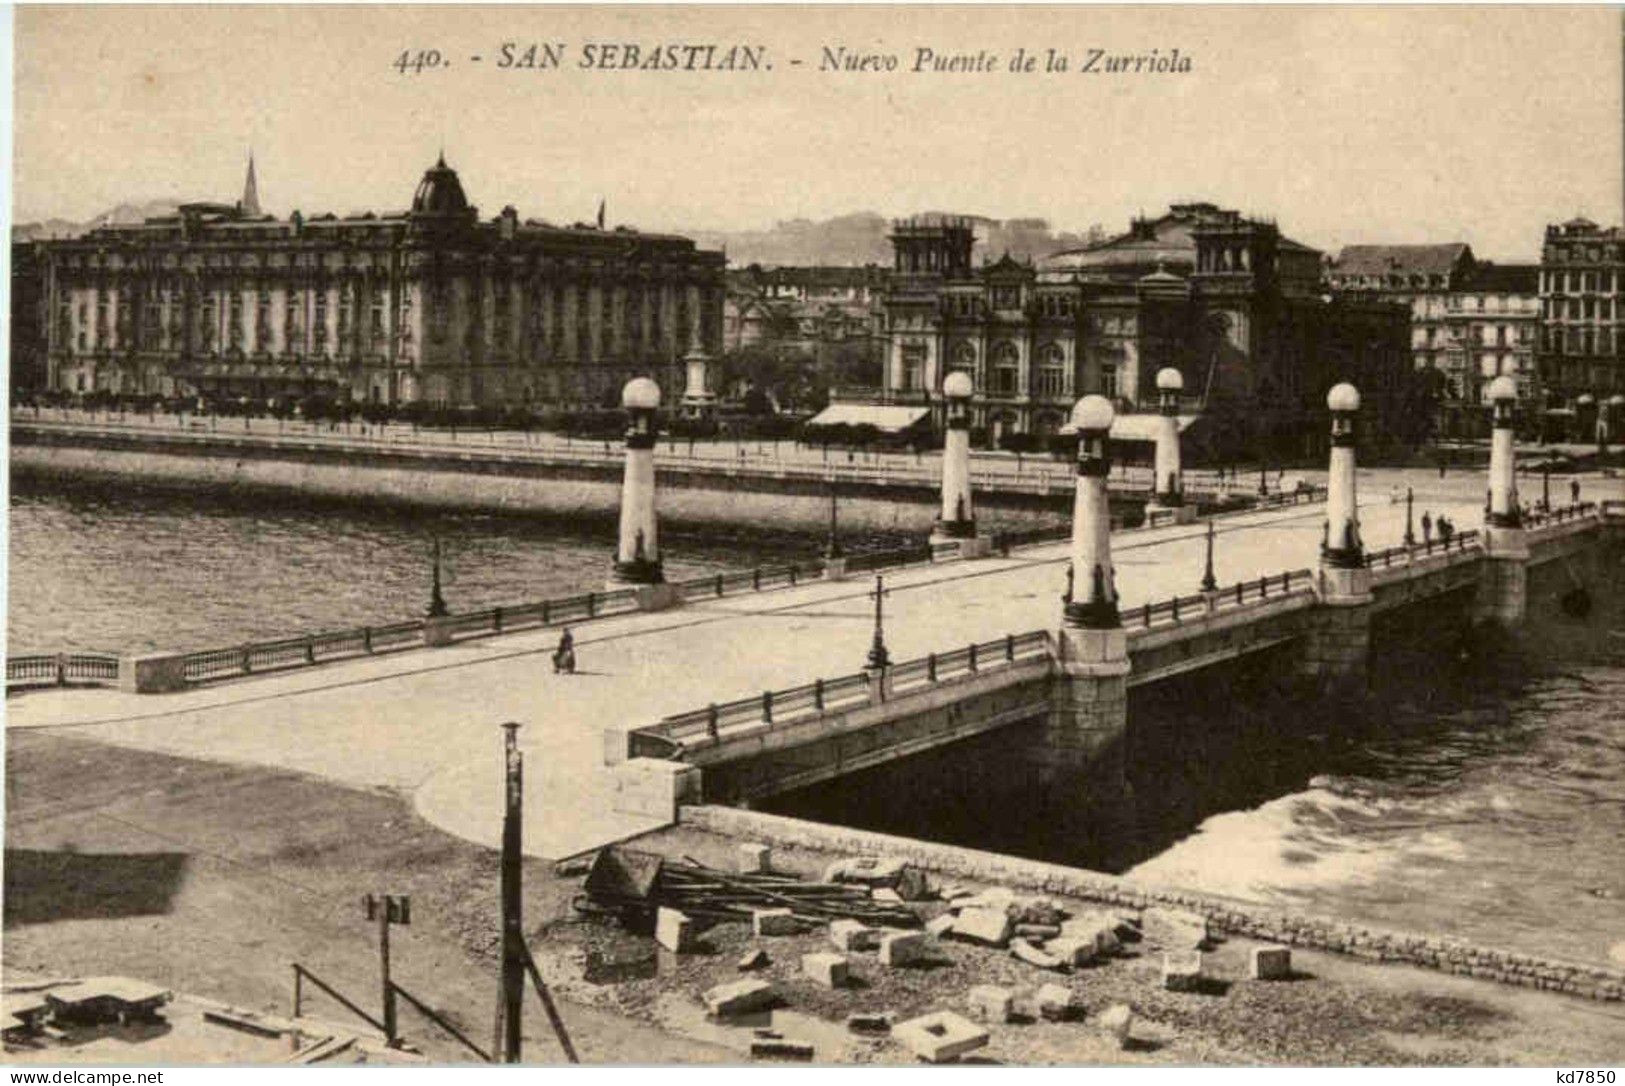 San Sebastian - Nuevo Puente - Guipúzcoa (San Sebastián)